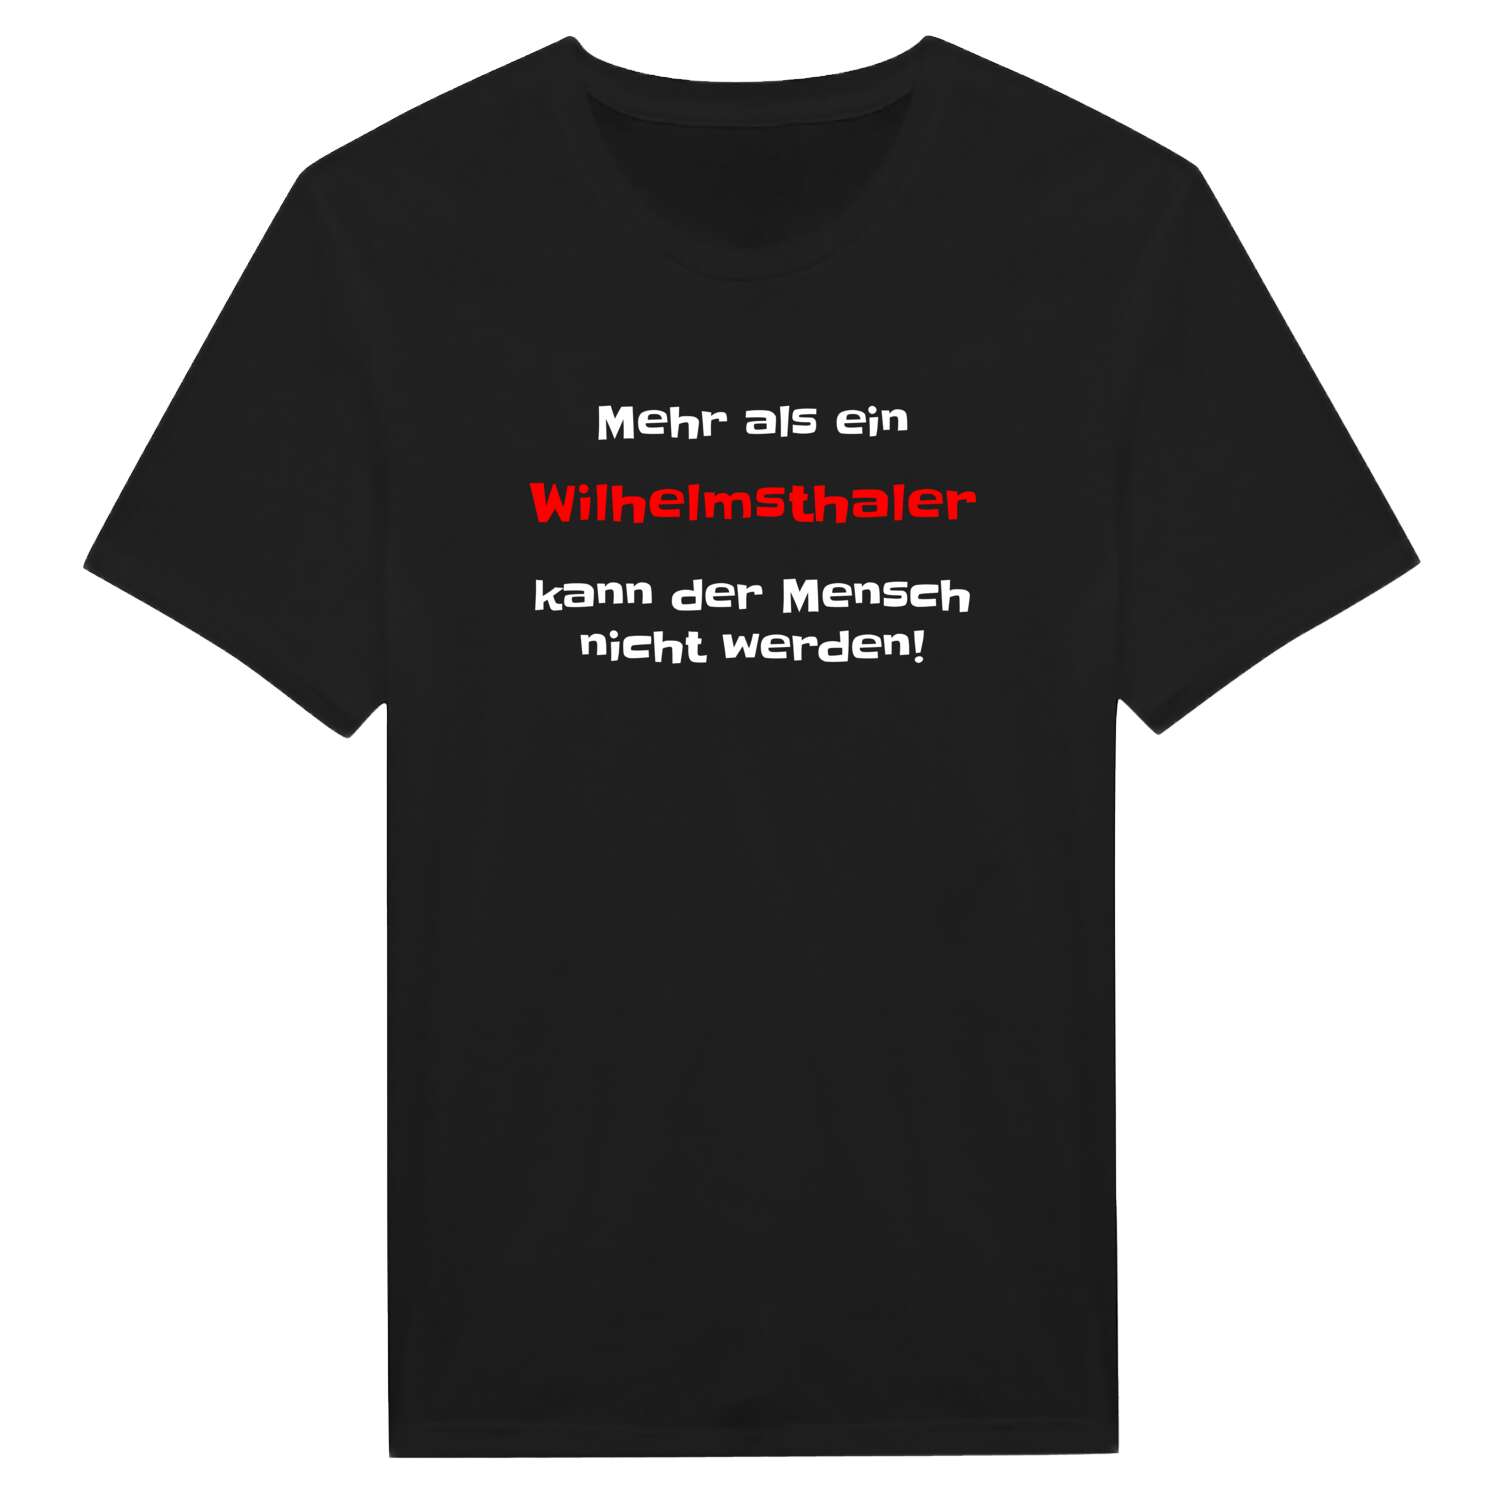 Wilhelmsthal T-Shirt »Mehr als ein«